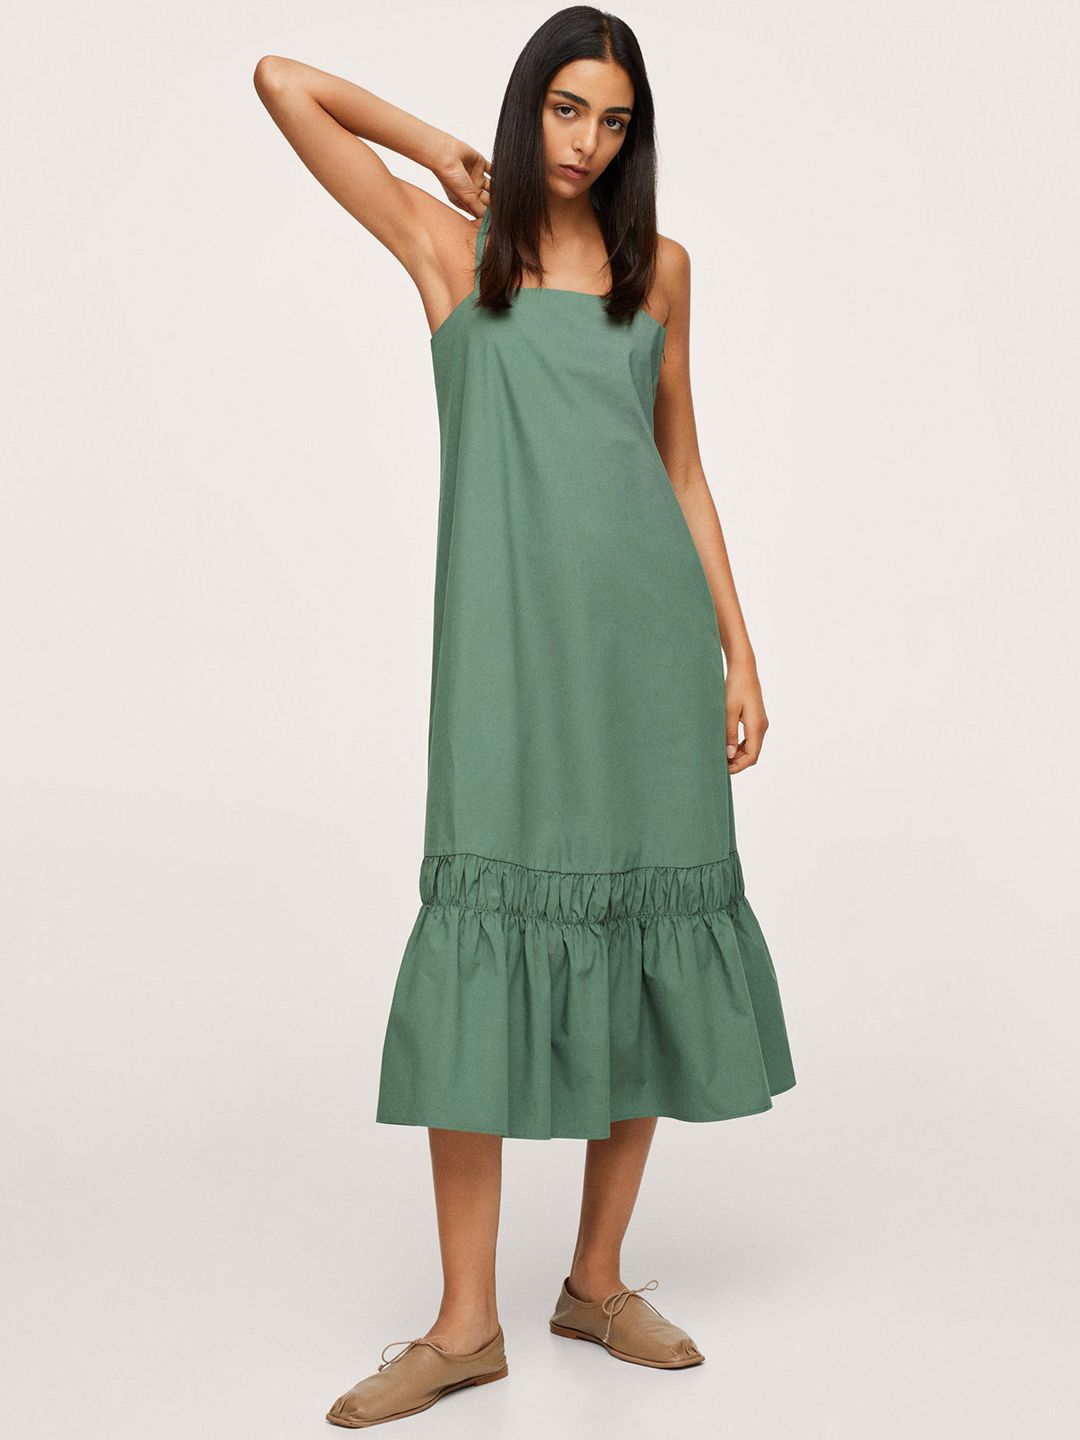 MANGO Green Pure Cotton Solid Midi A-Line Dress Price in India